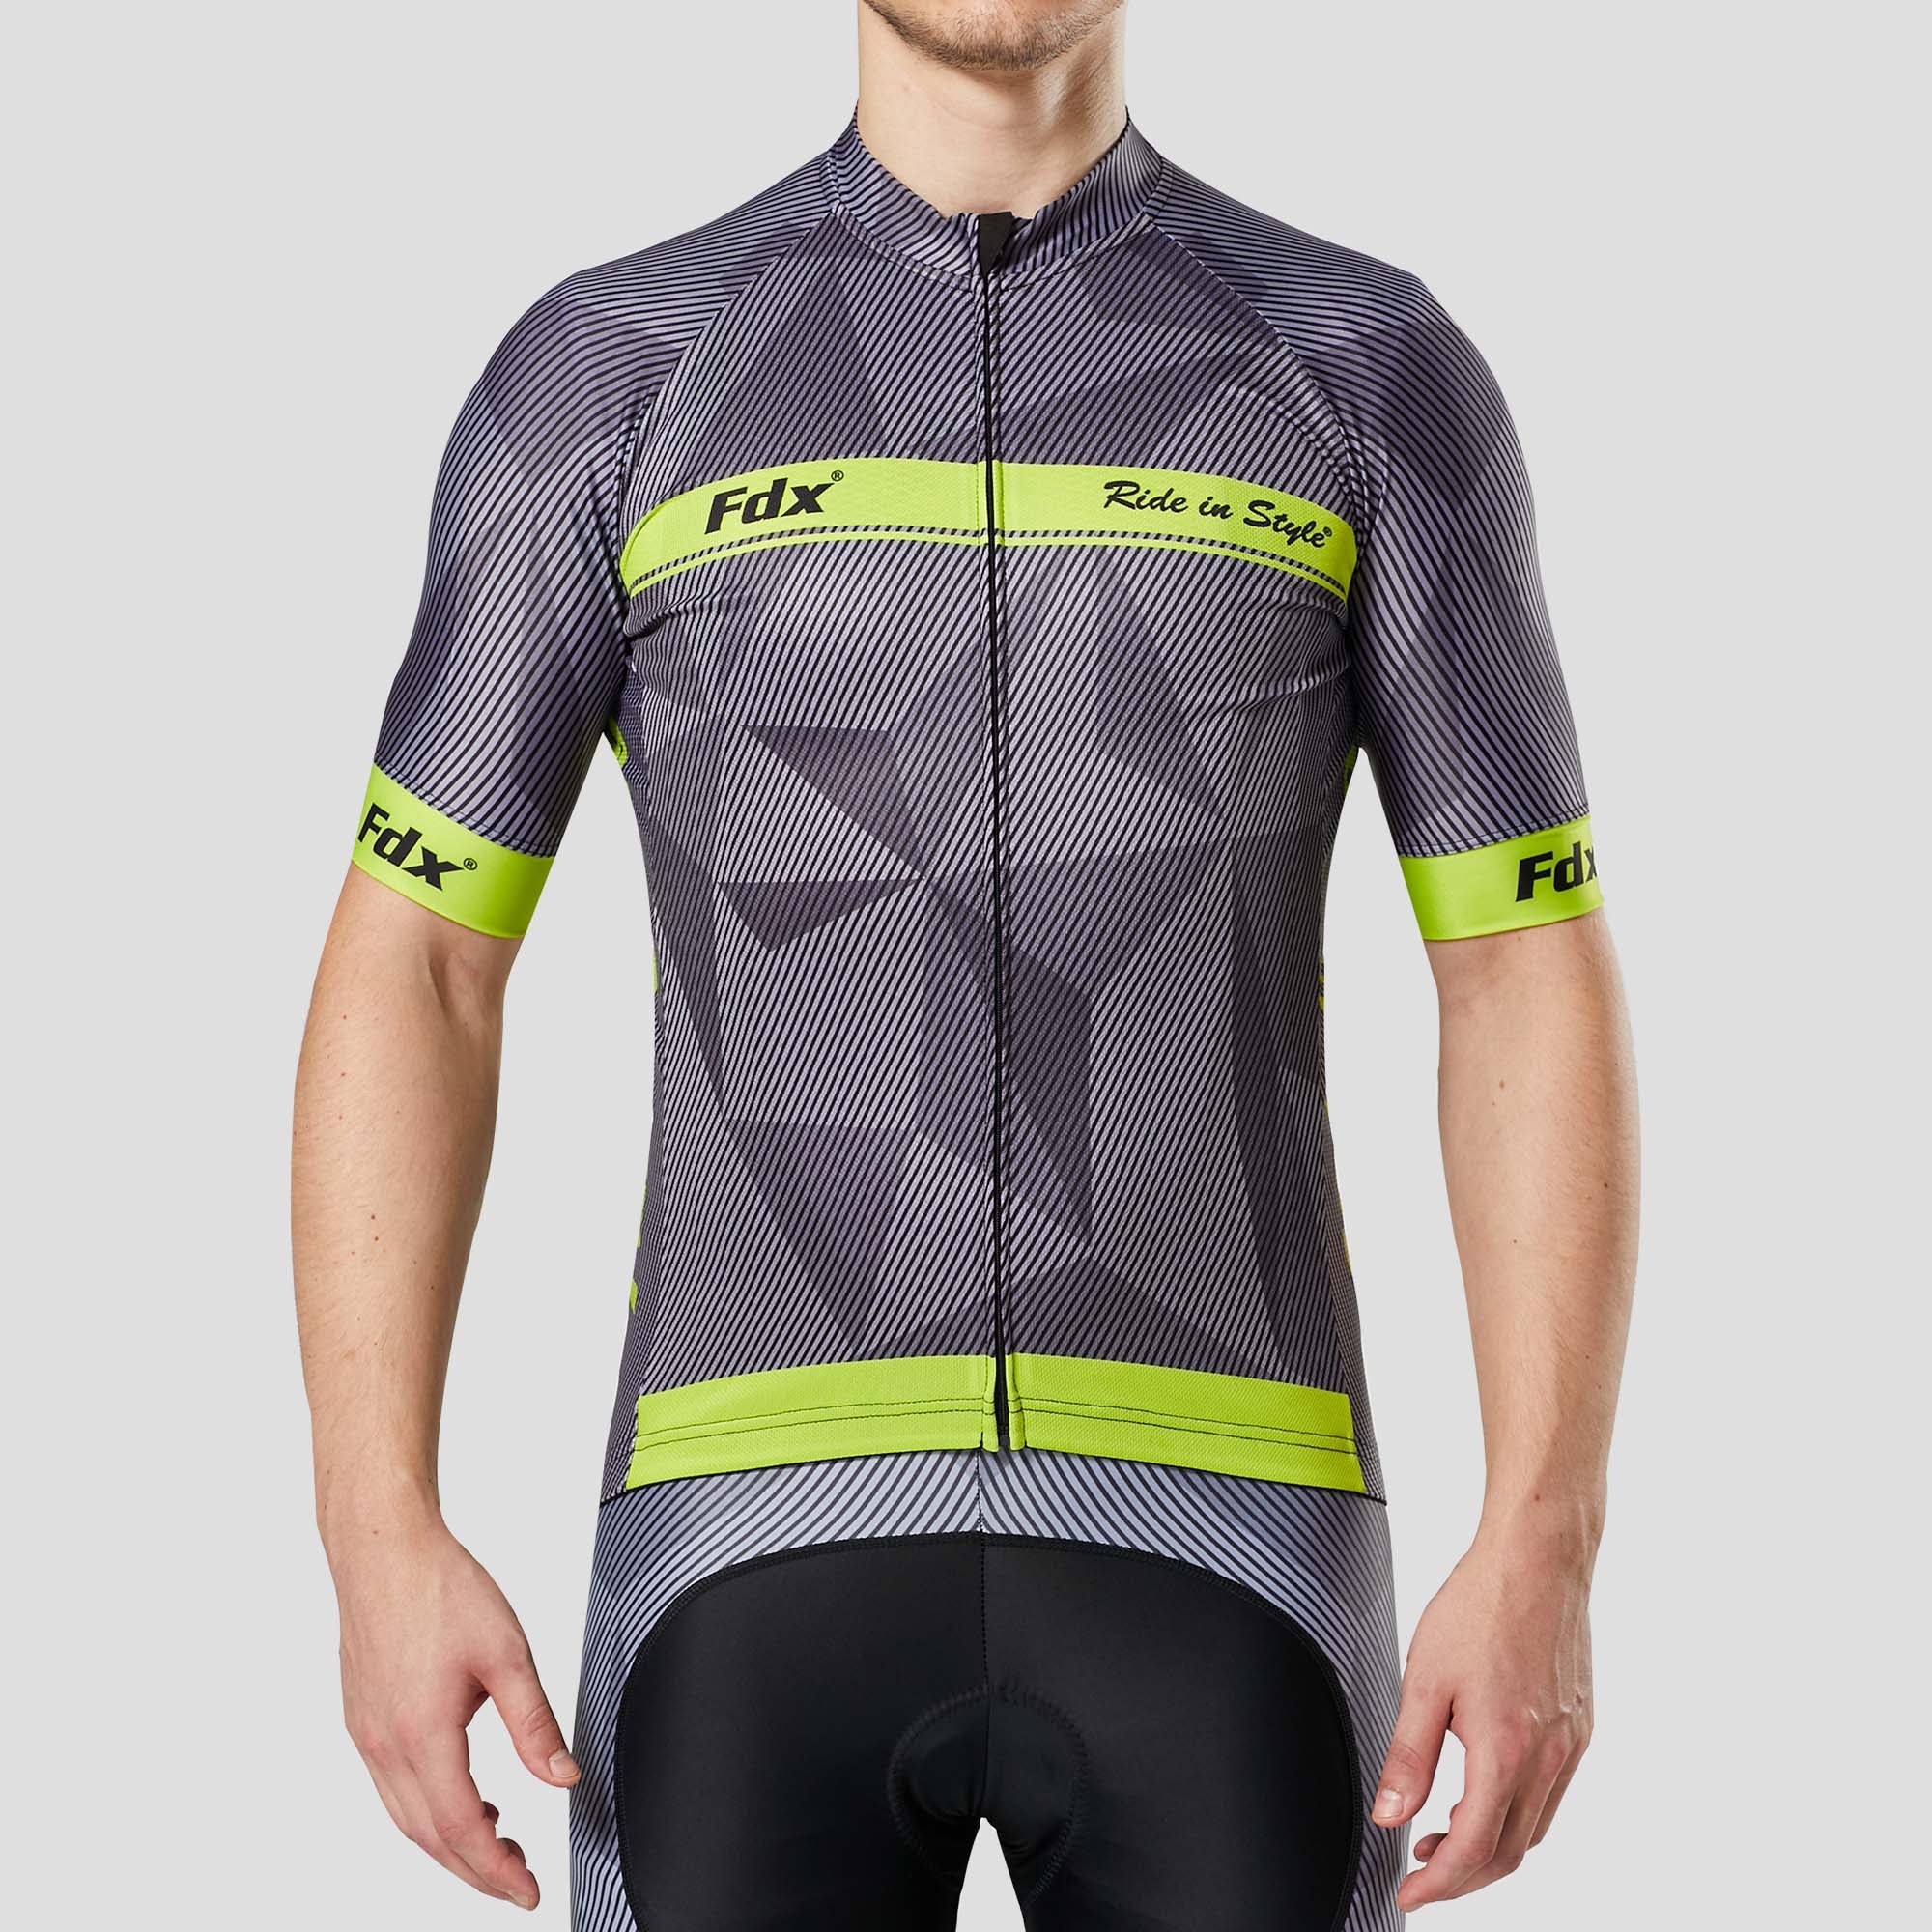 Fdx Mens Yellow & Grey Short Sleeve Cycling Jersey for Summer Best Road Bike Wear Top Light Weight, Full Zipper, Pockets & Hi-viz Reflectors - Splinter